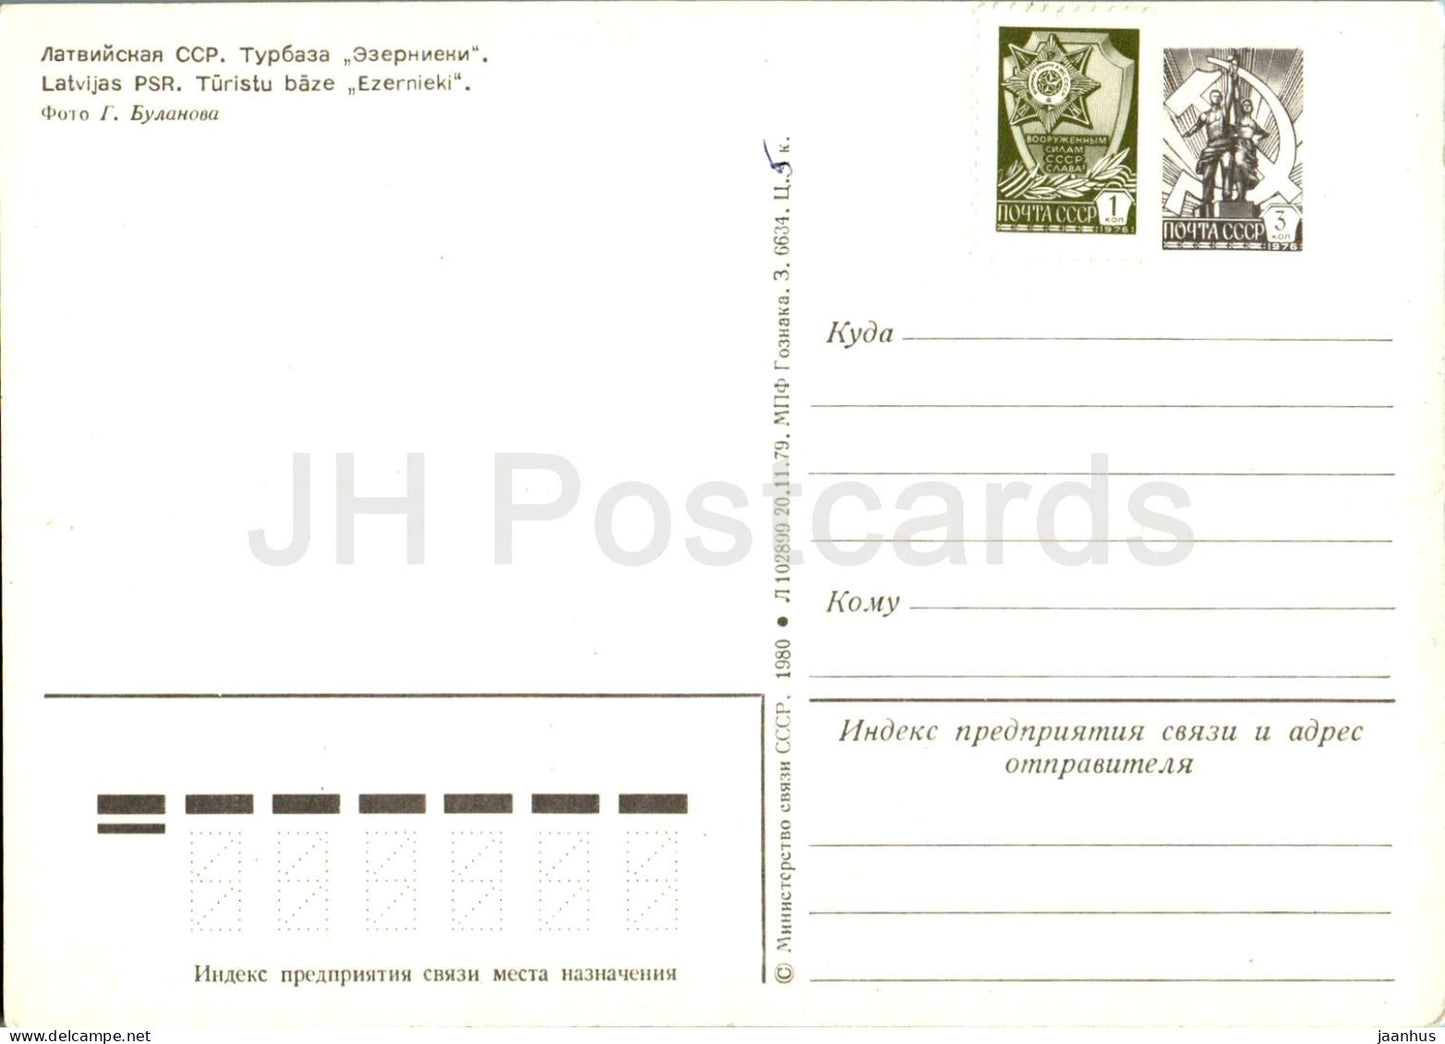 Base touristique Ezernieki - entier postal - 1980 - Lettonie URSS - inutilisé 